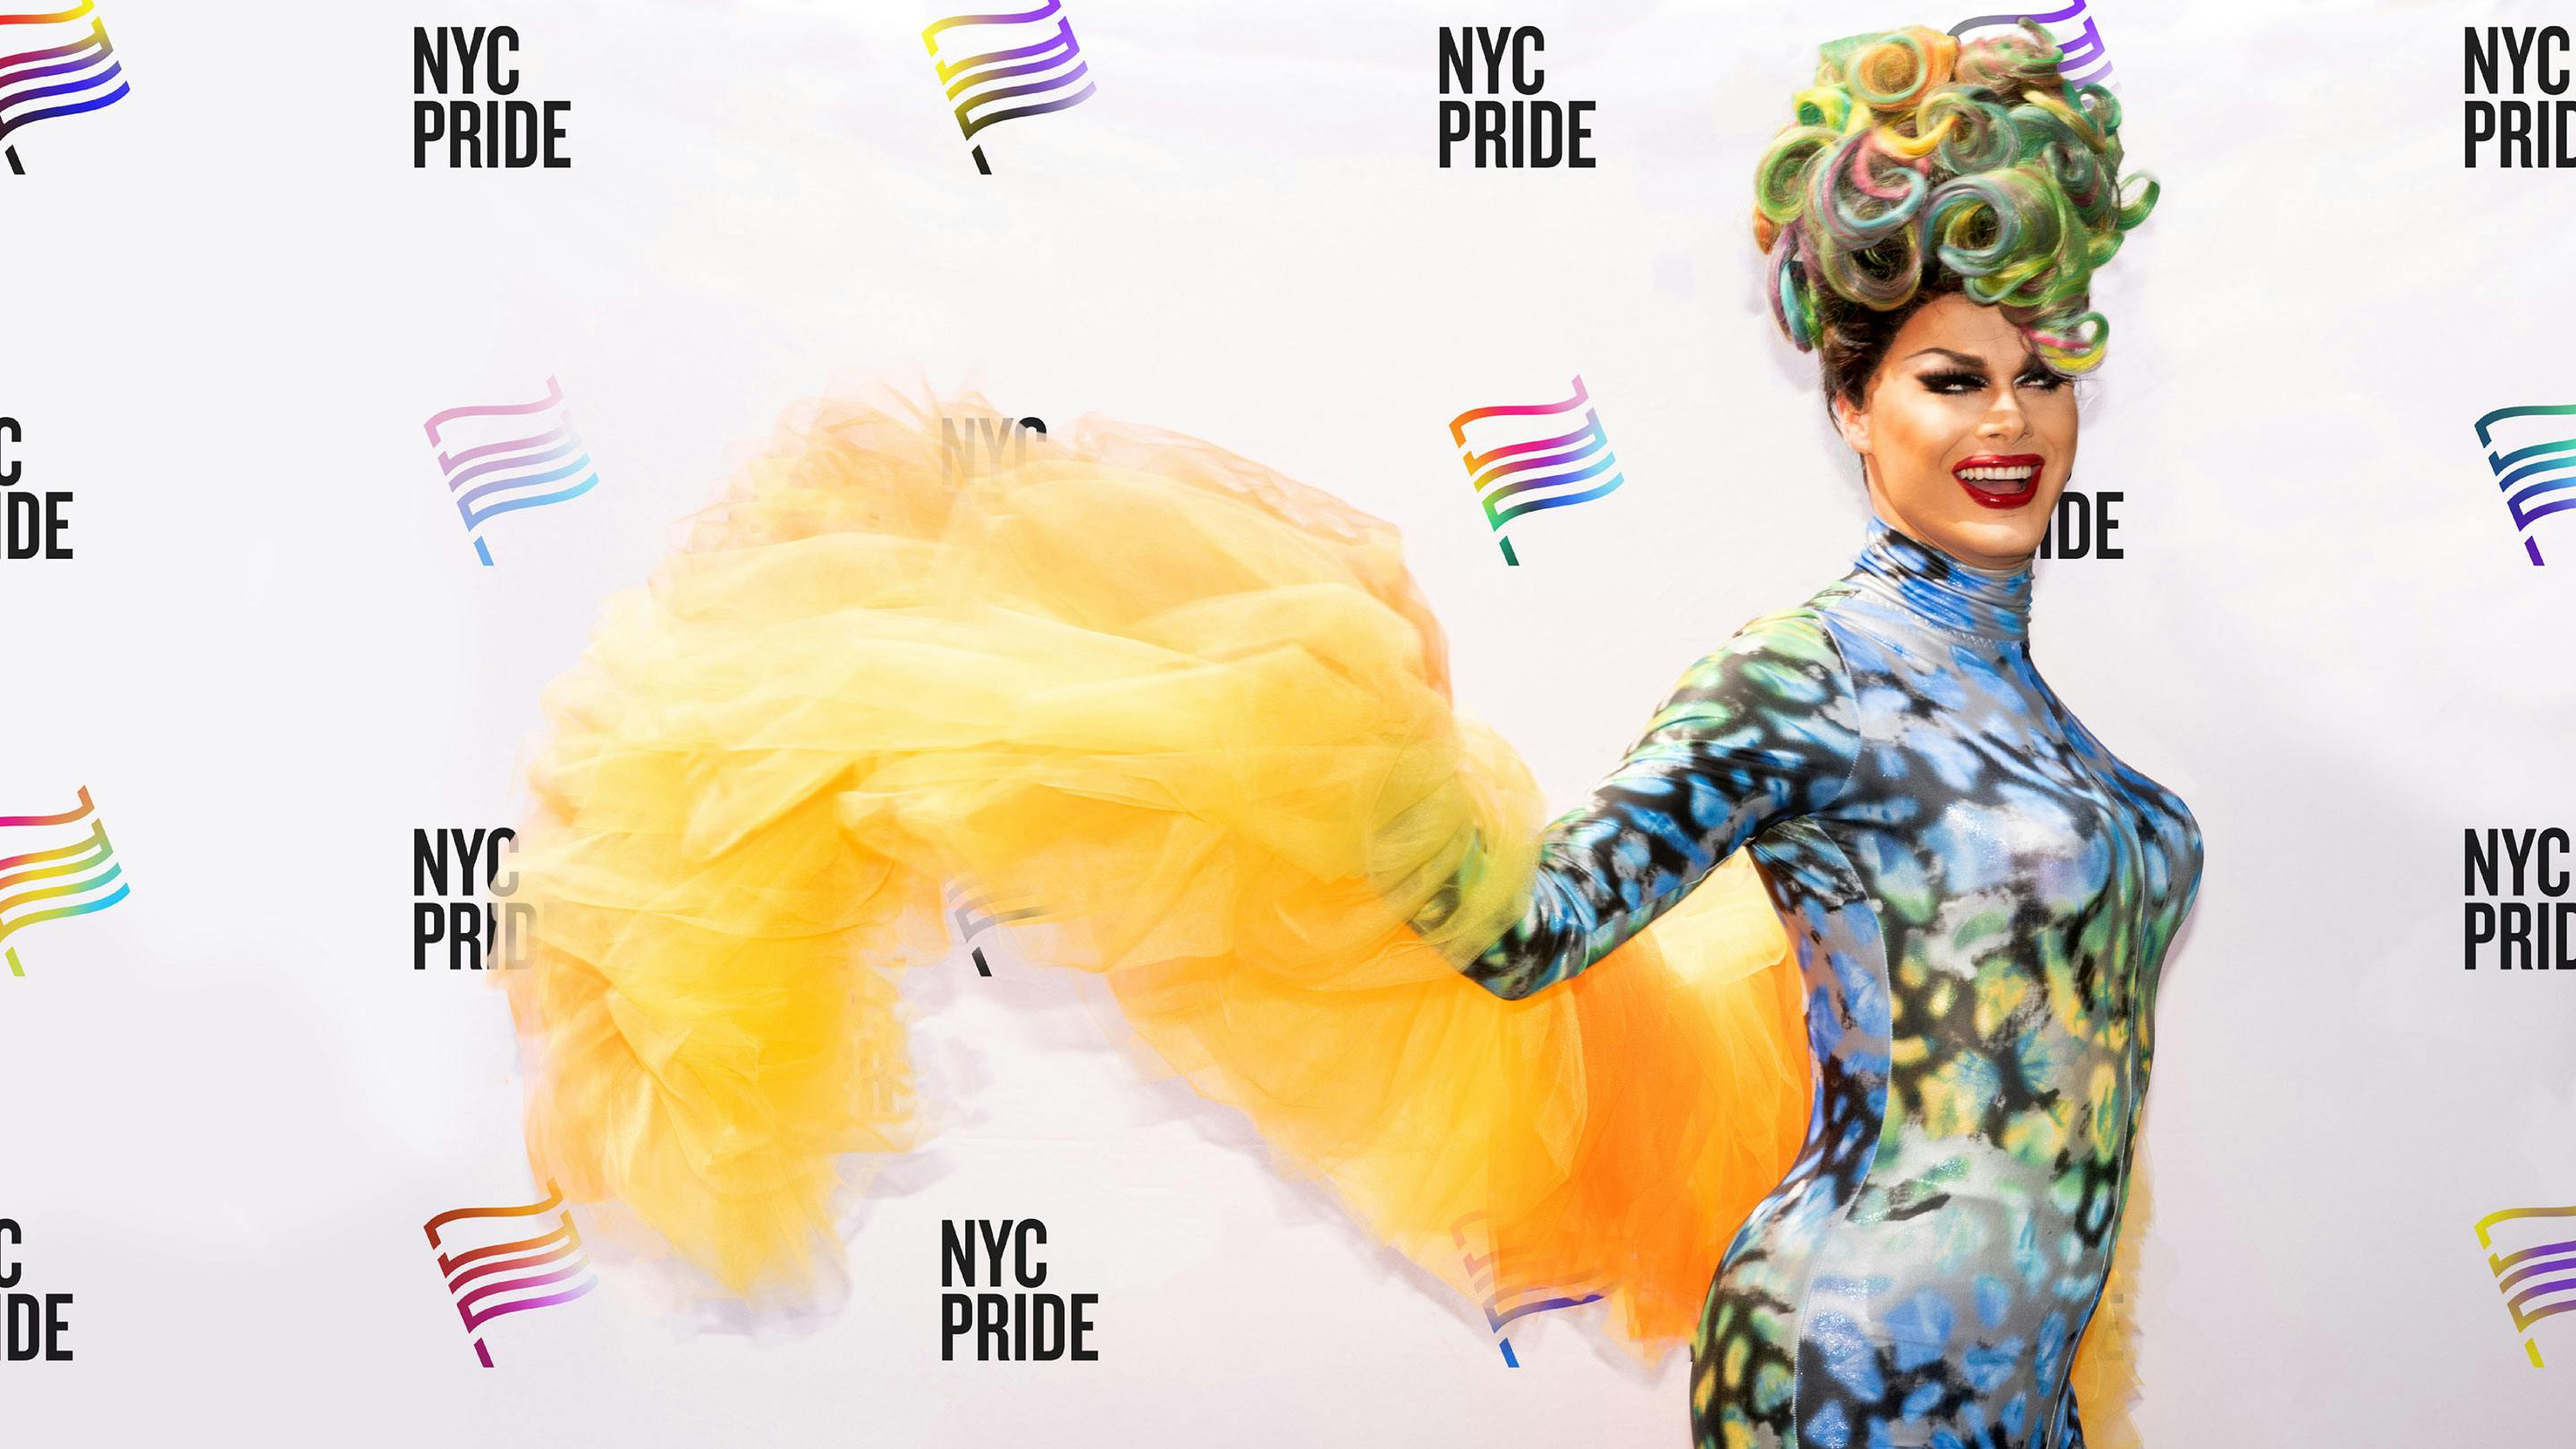 NYC Pride backdrop